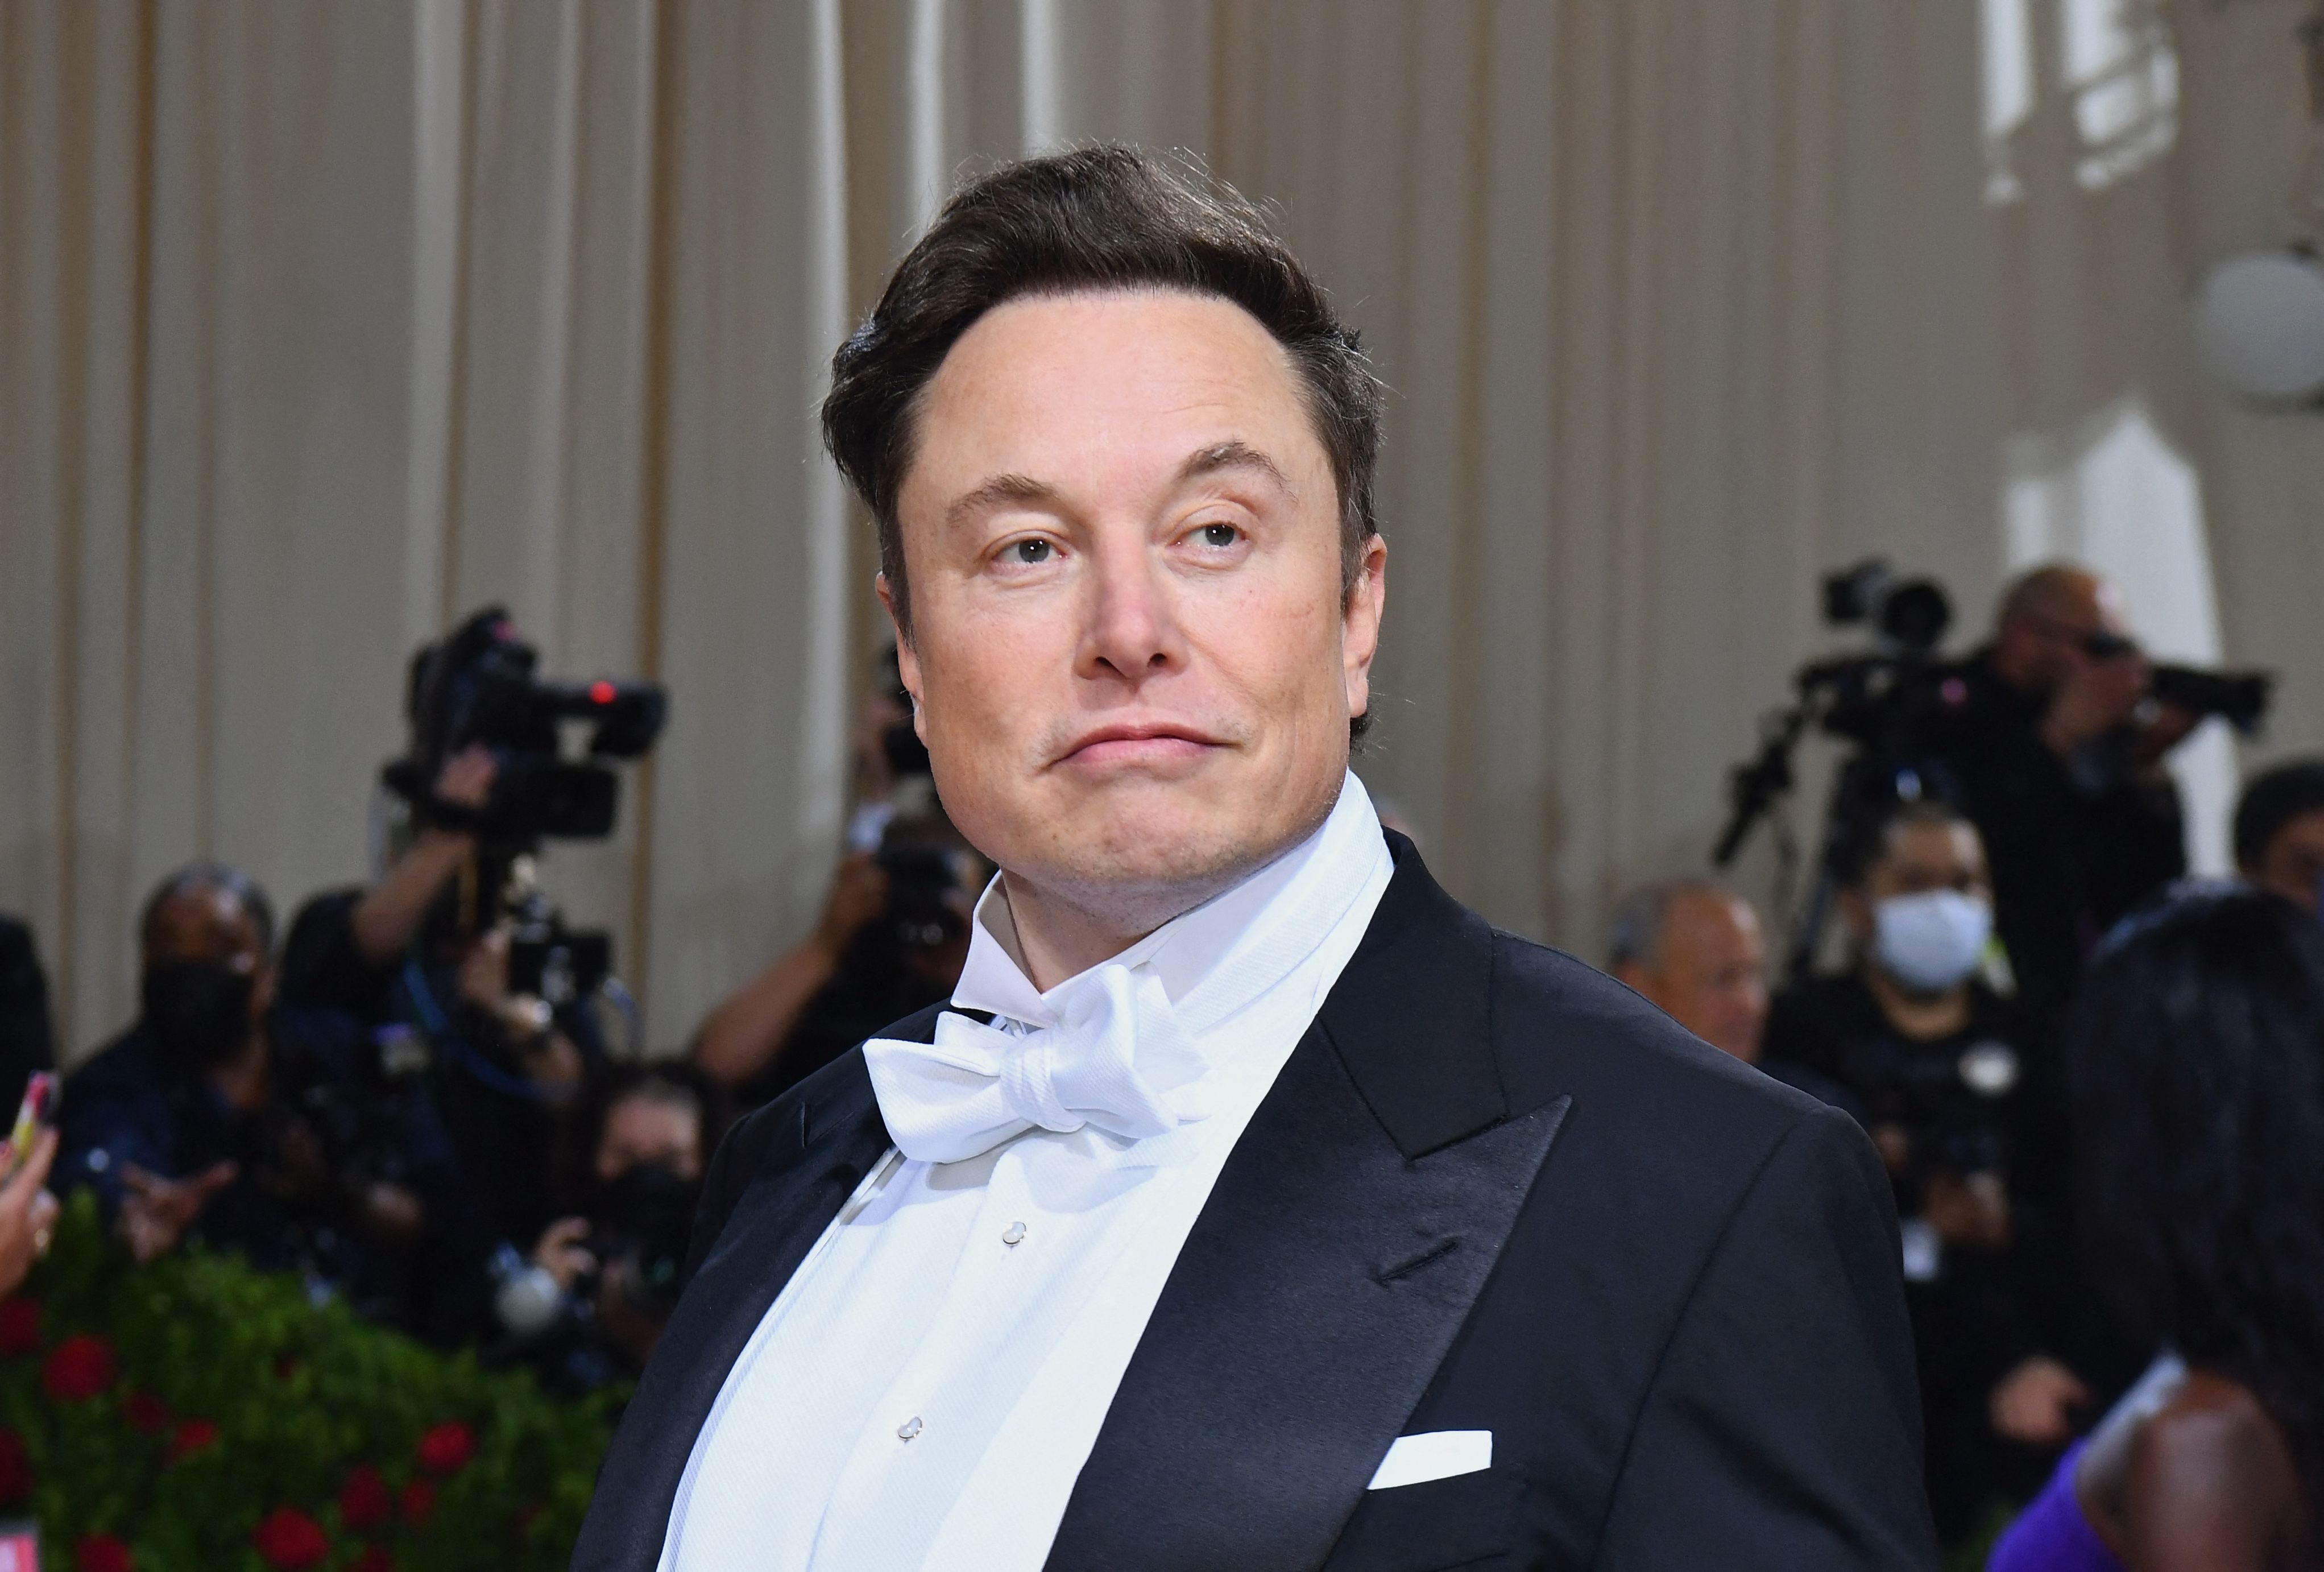 El multimillonario Elon Musk niega con vehemencia las acusaciones de conducta sexual inapropiada